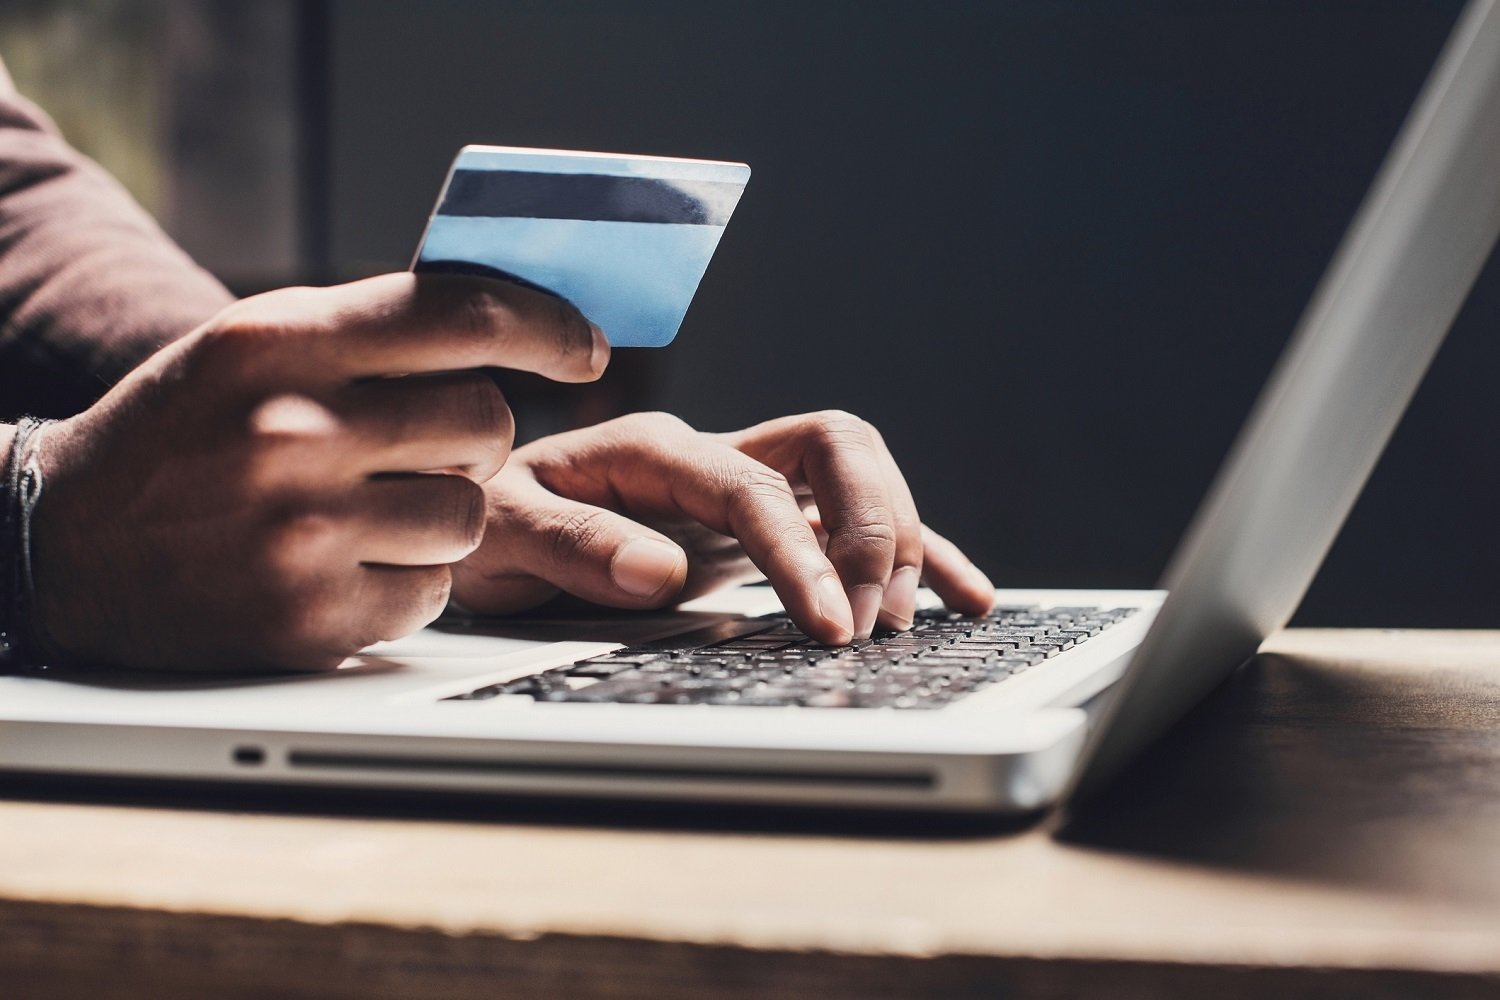 Интернет-магазины опасаются падения продаж из-за законопроекта о защите персональных данных